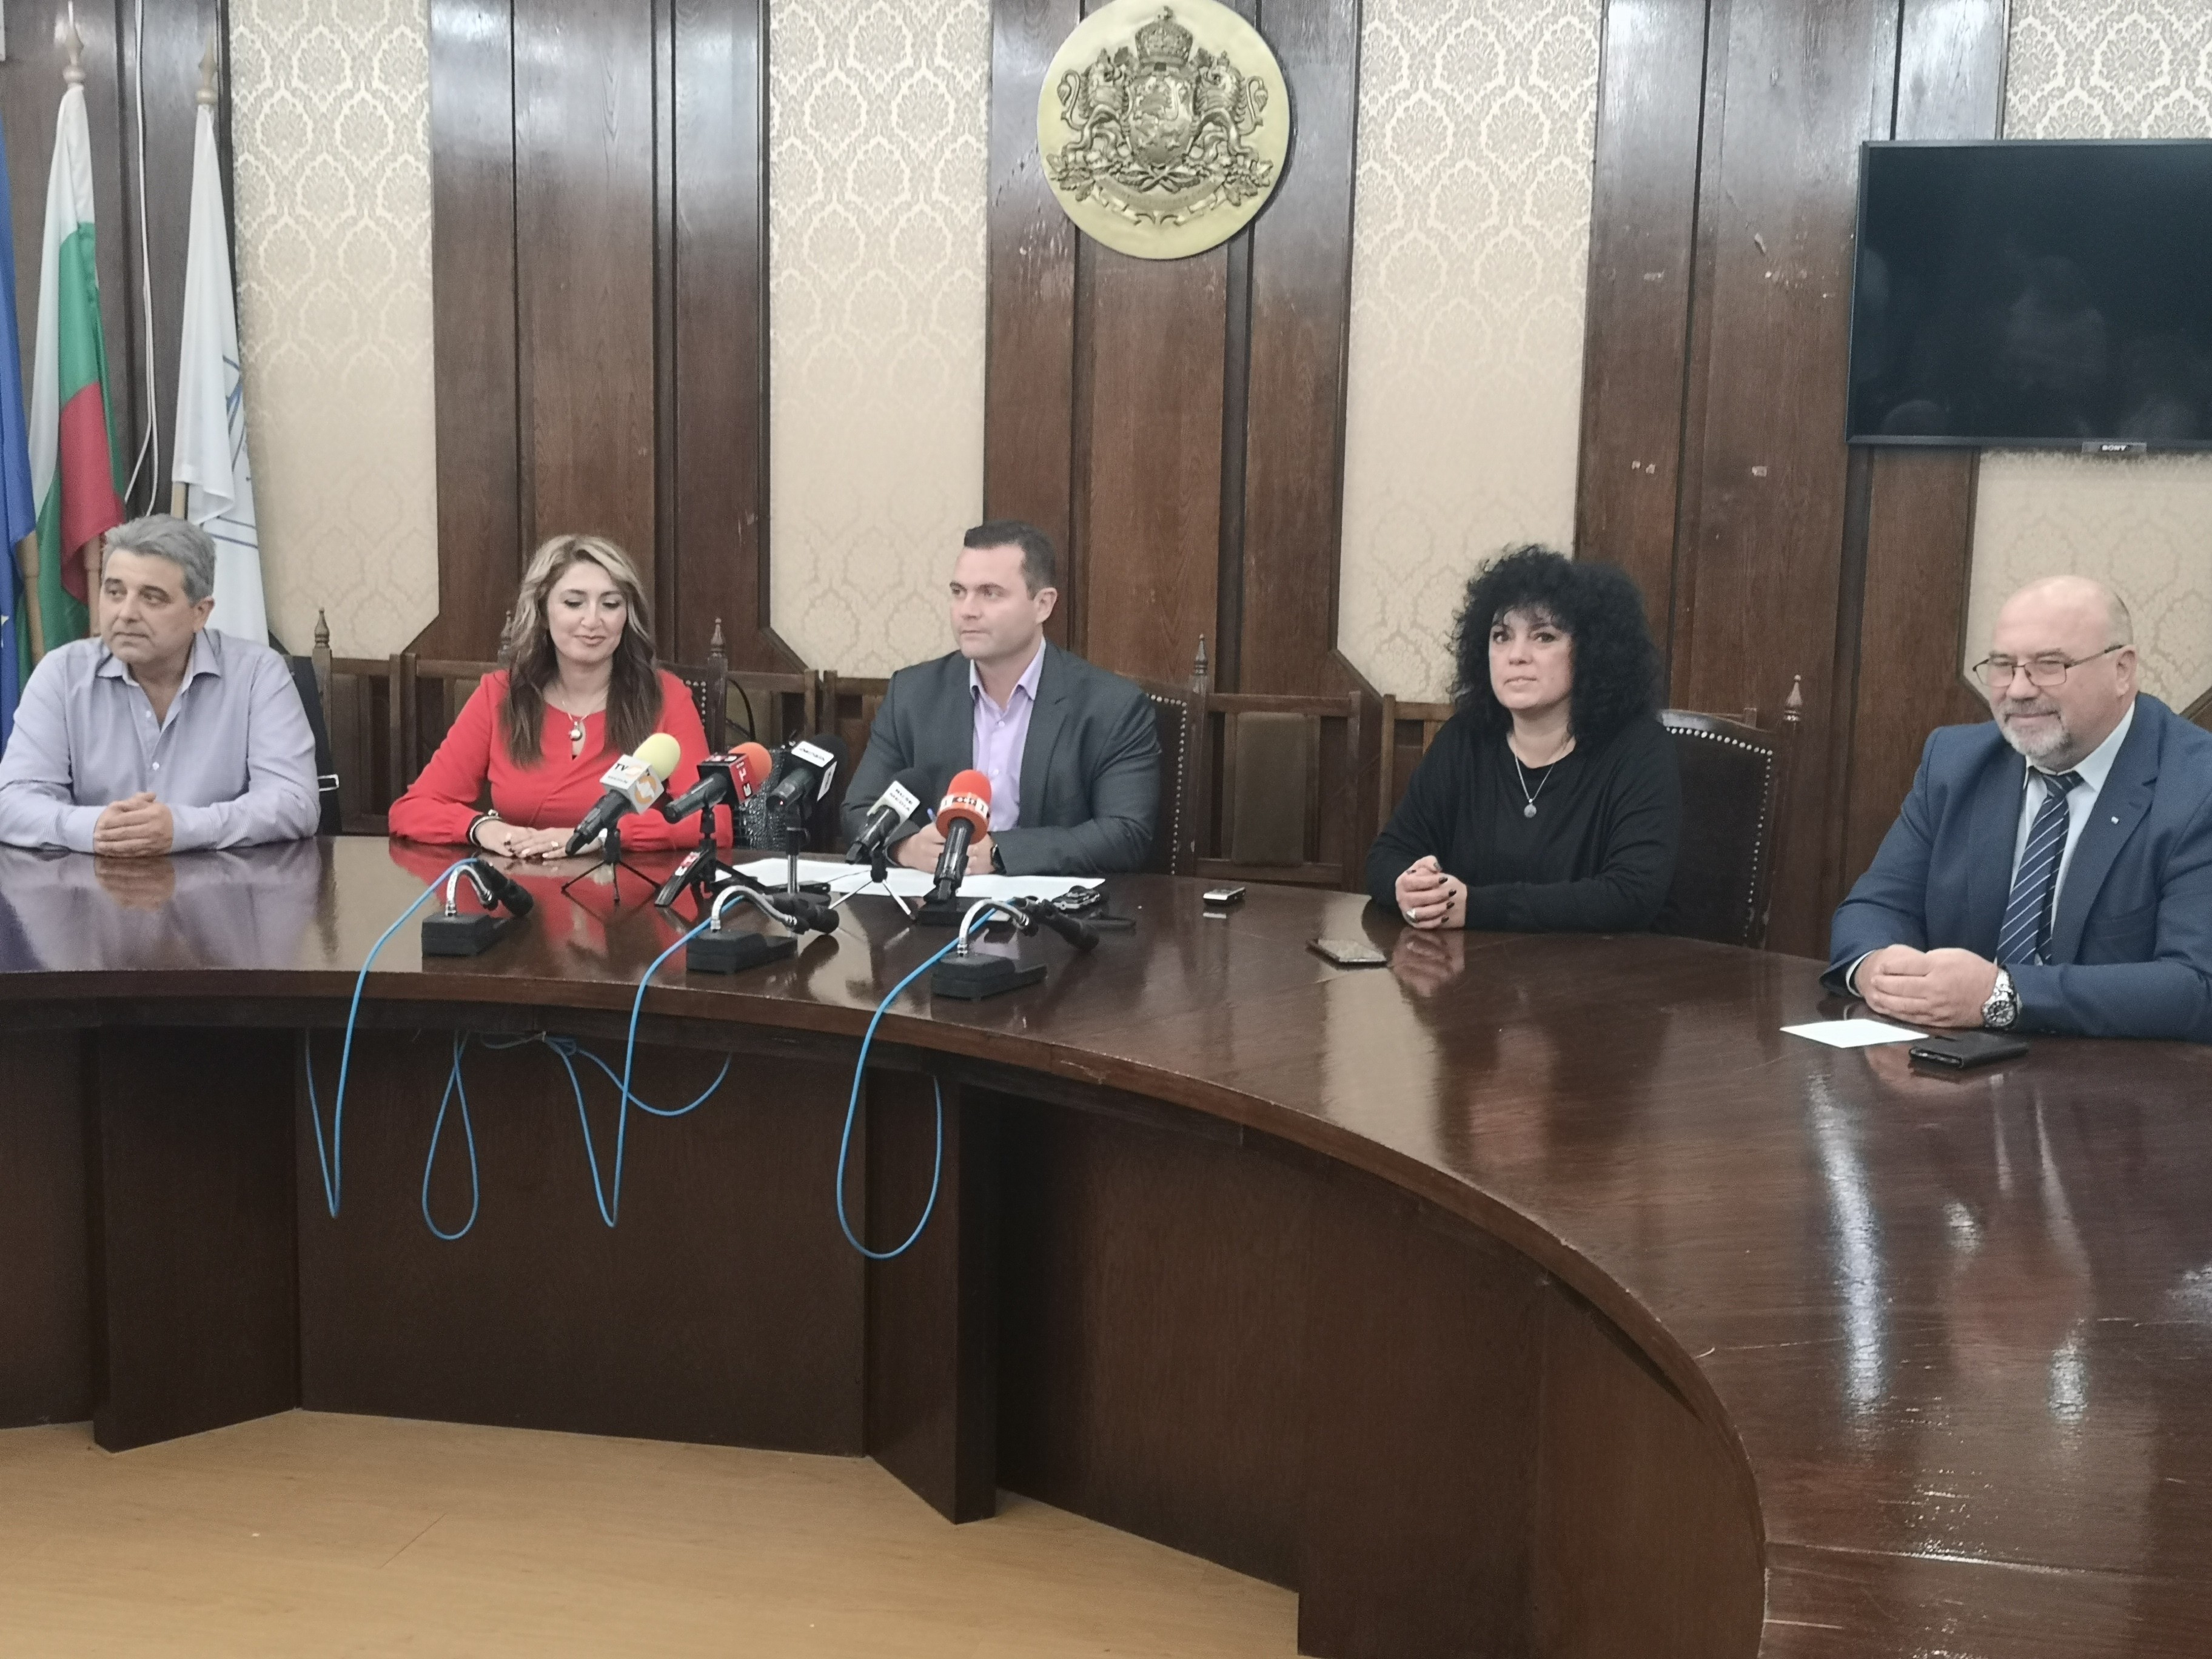 Кметът Пенчо Милков представи официално екипа си от четирима заместници